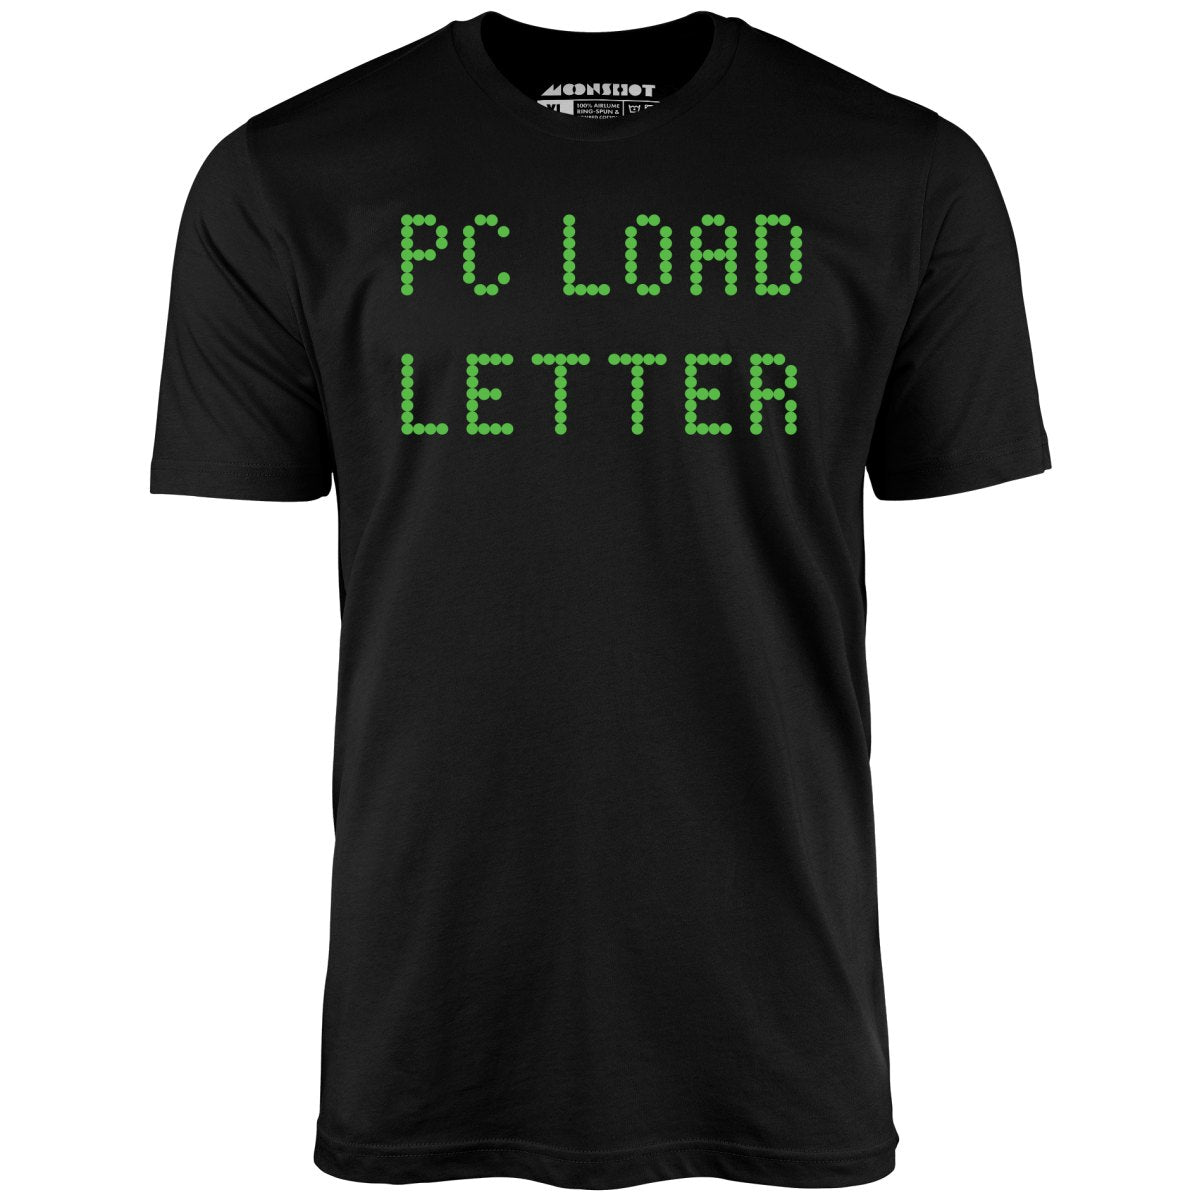 PC Load Letter - Unisex T-Shirt